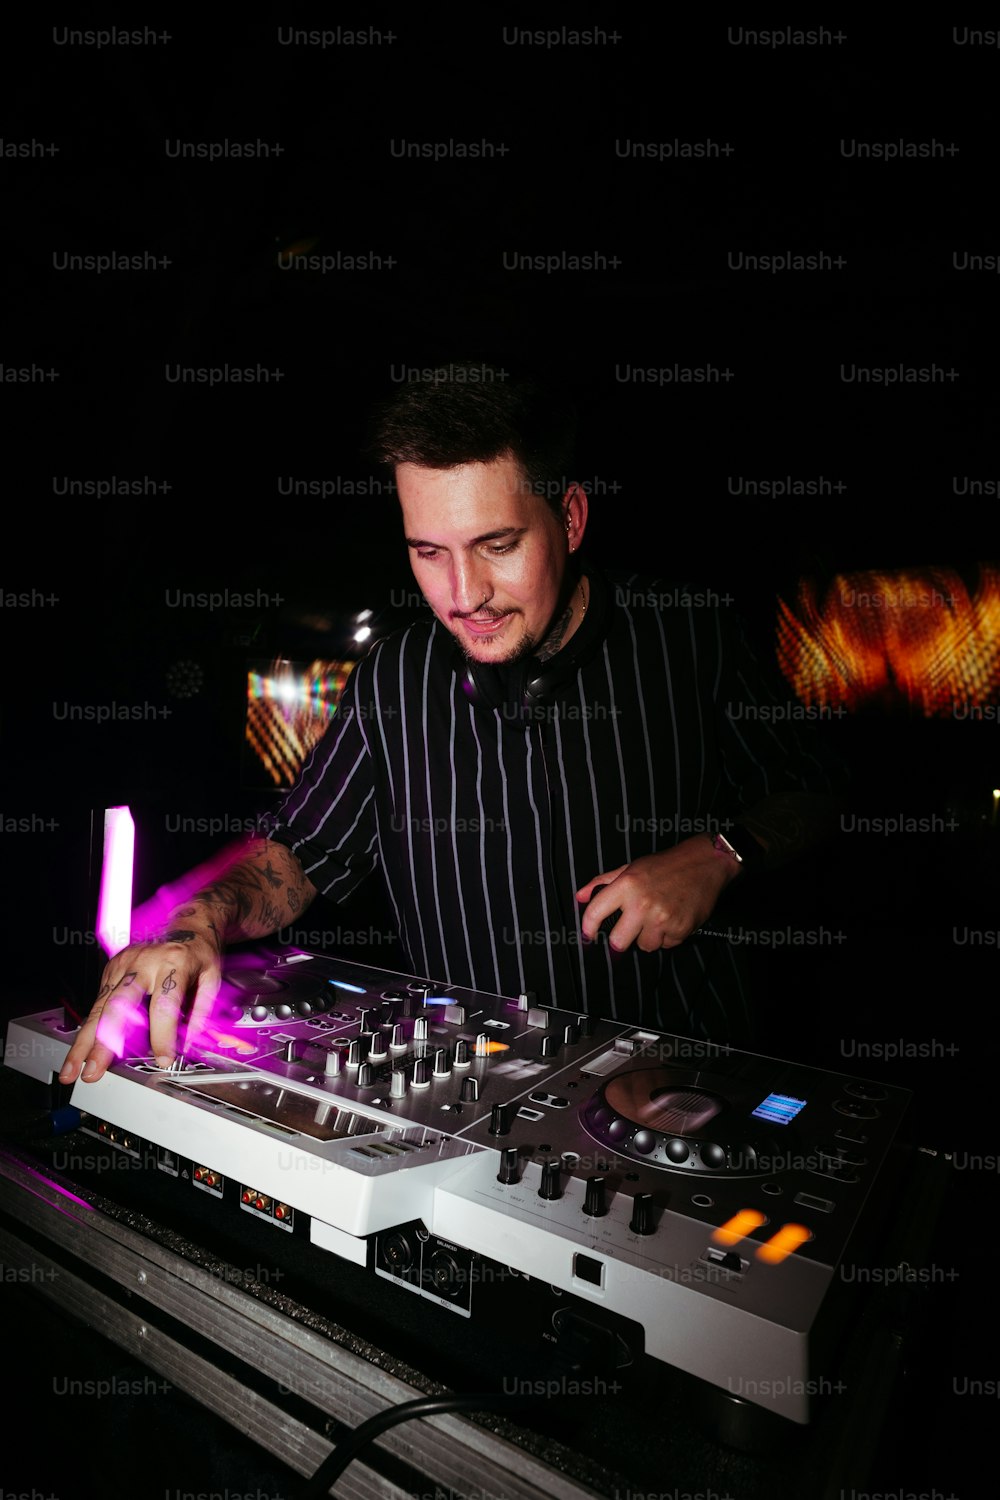 Un hombre con una camisa a rayas blancas y negras mezclando música